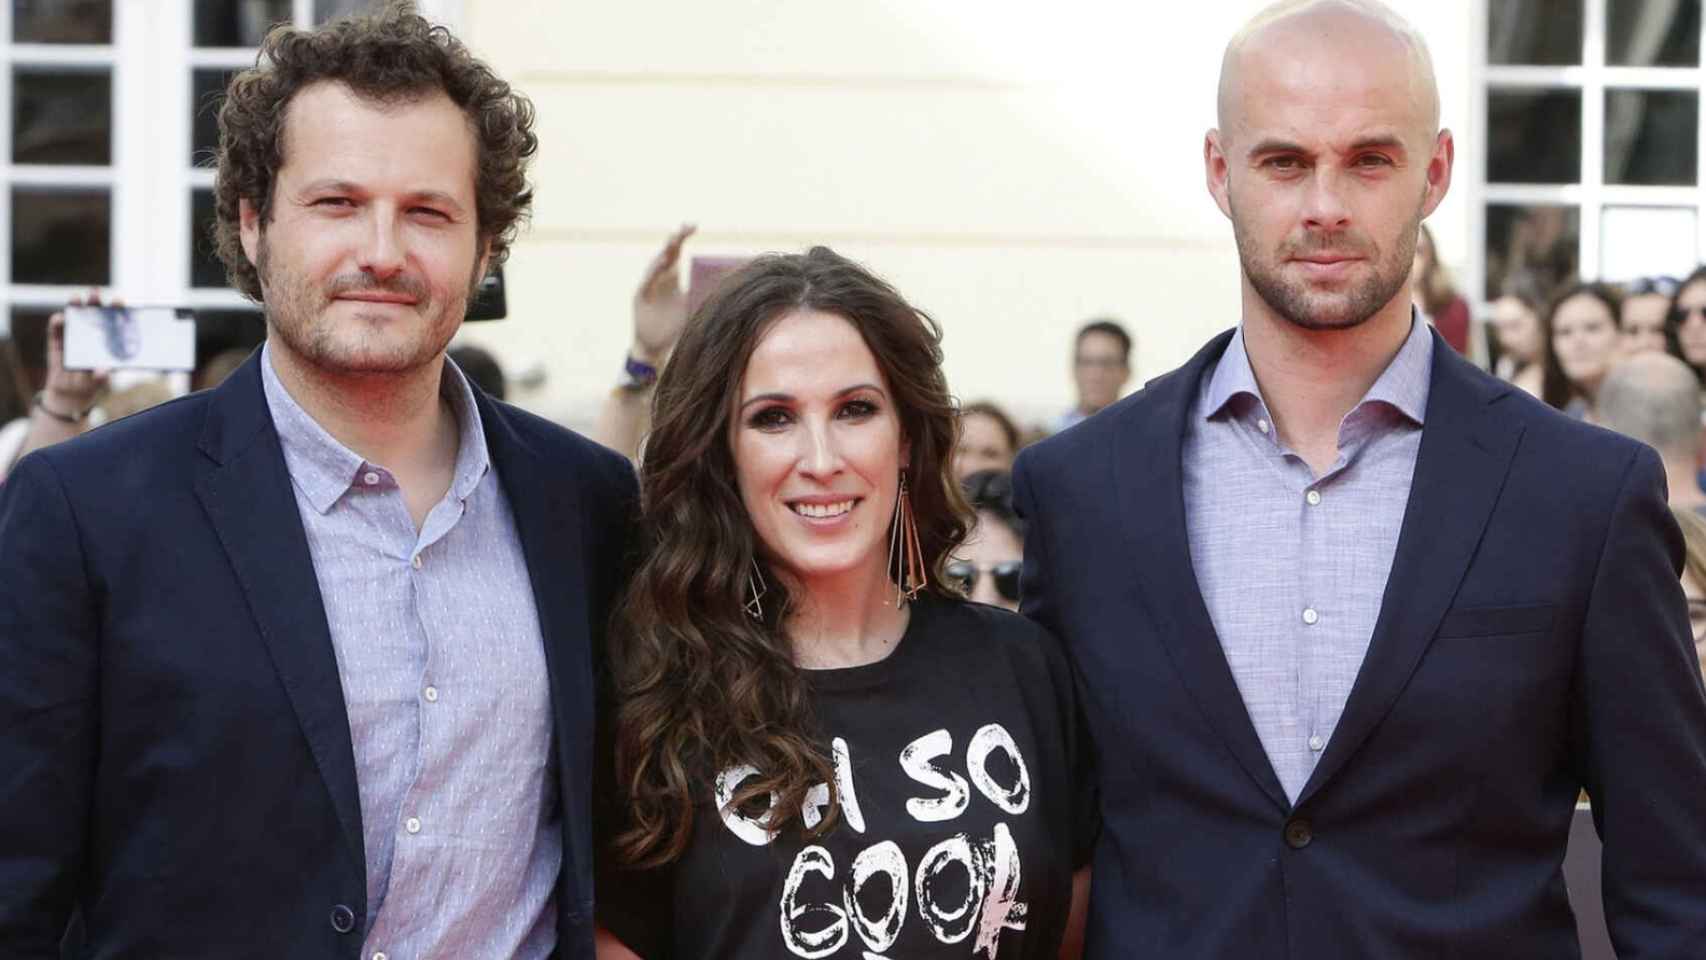 De izquierda a derecha, Telmo Iragorri, Malú y Curro Sánchez Varela, en la presentación del documental sobre la cantante en el Festival de Cine de Málaga